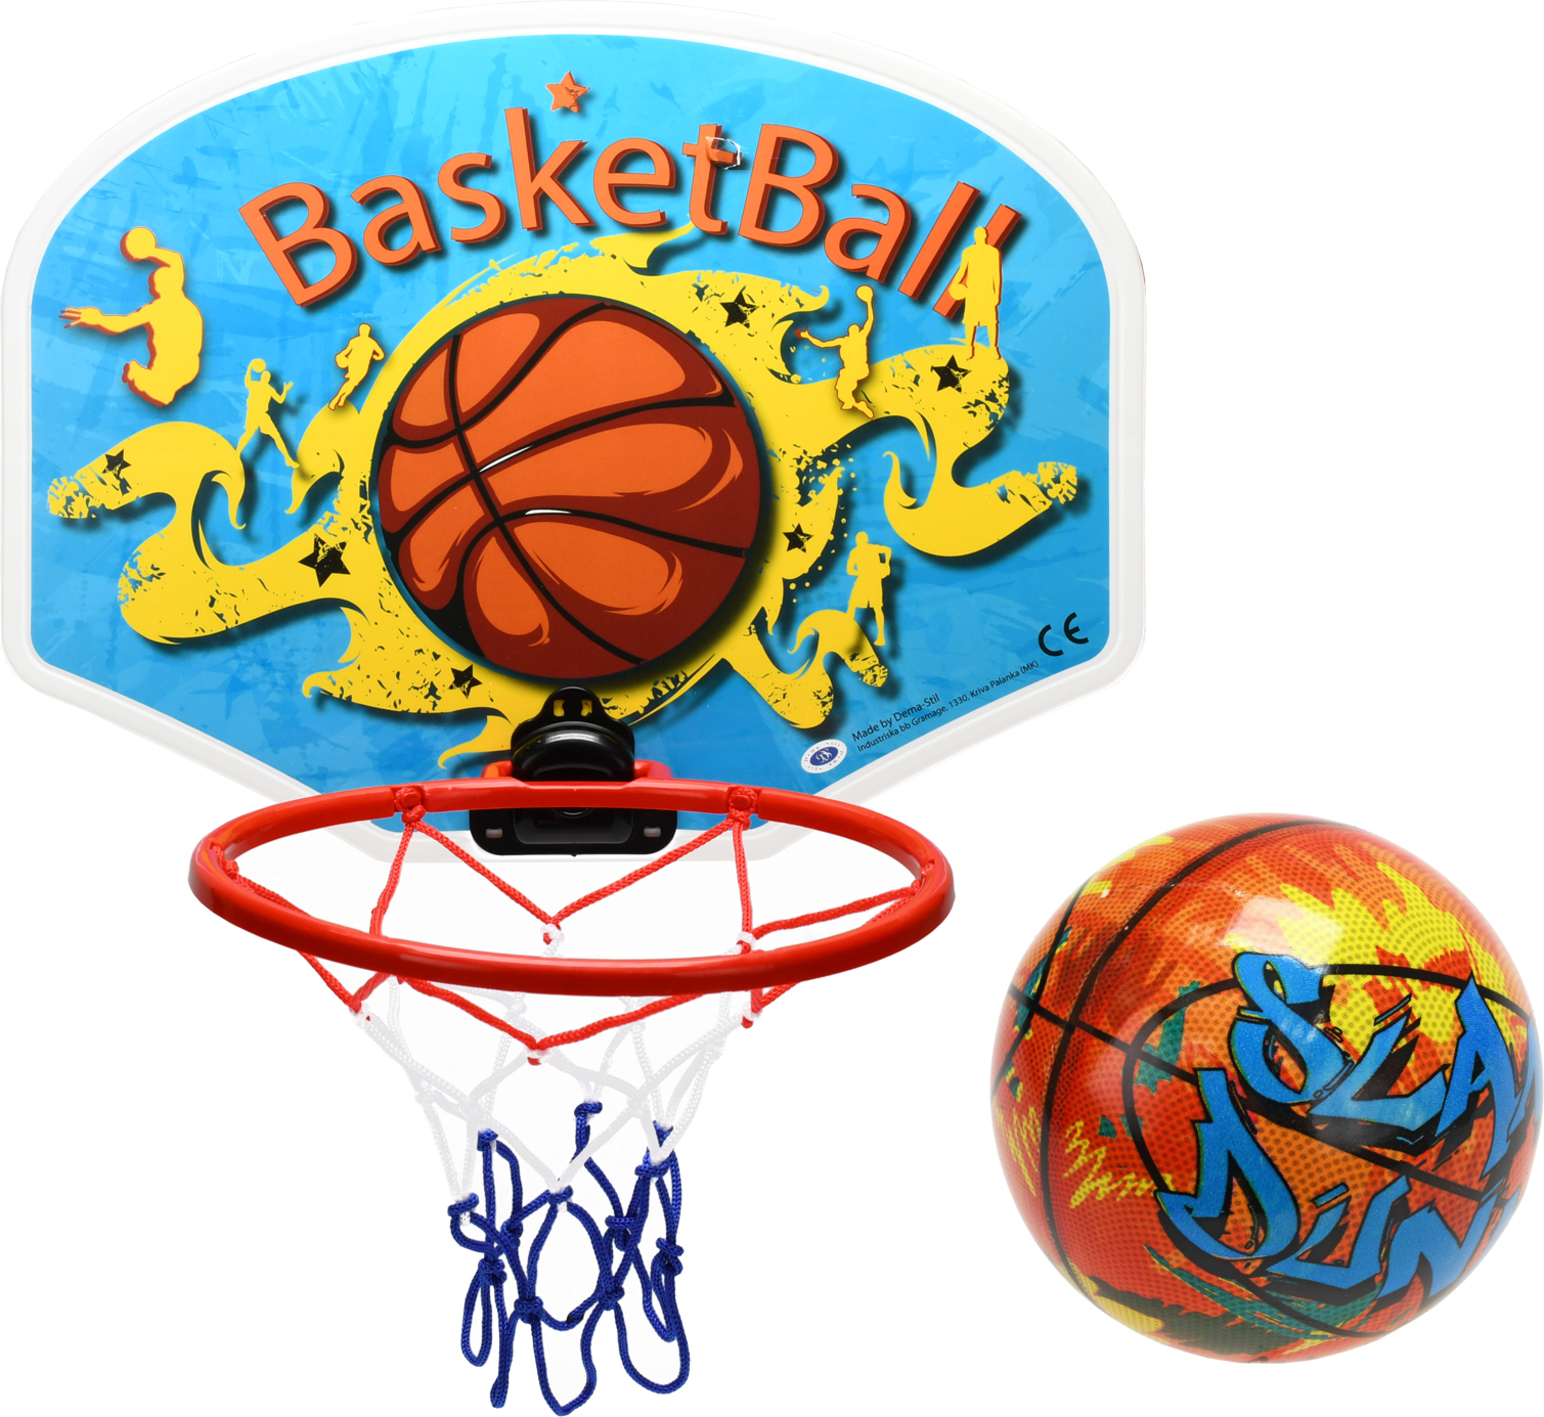 Basketbalový koš 34x25,3cm s míčem